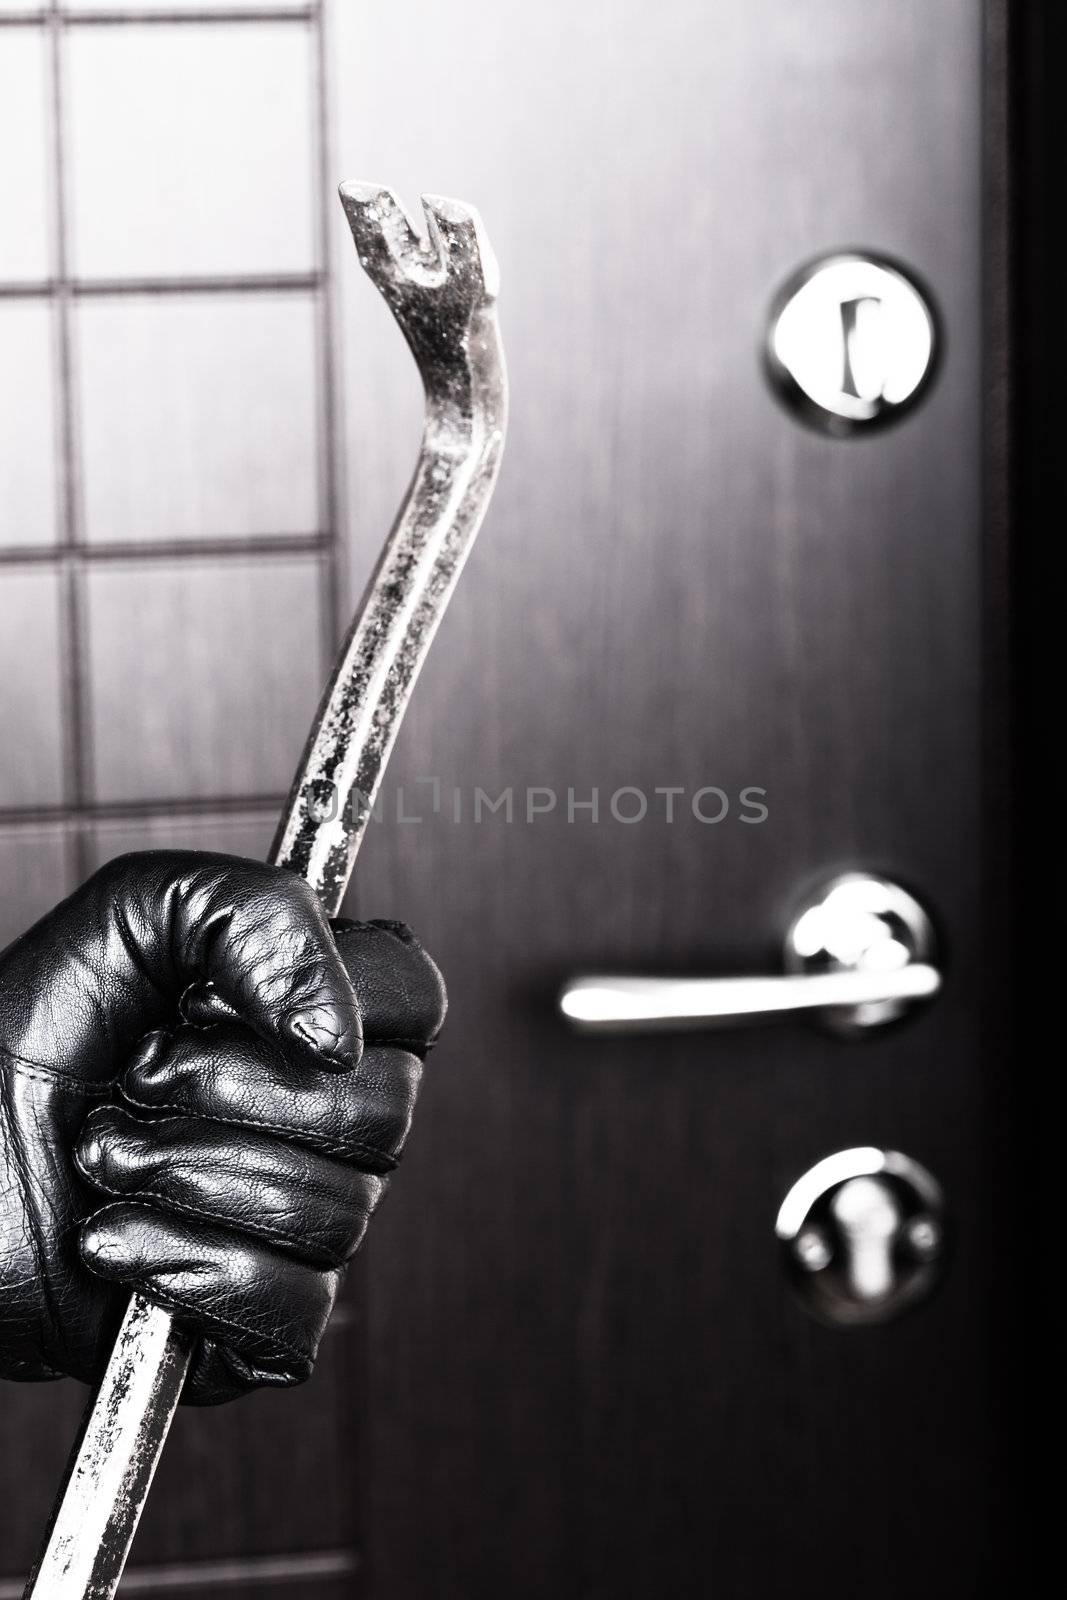 Burglar hand holding crowbar break opening door by ia_64